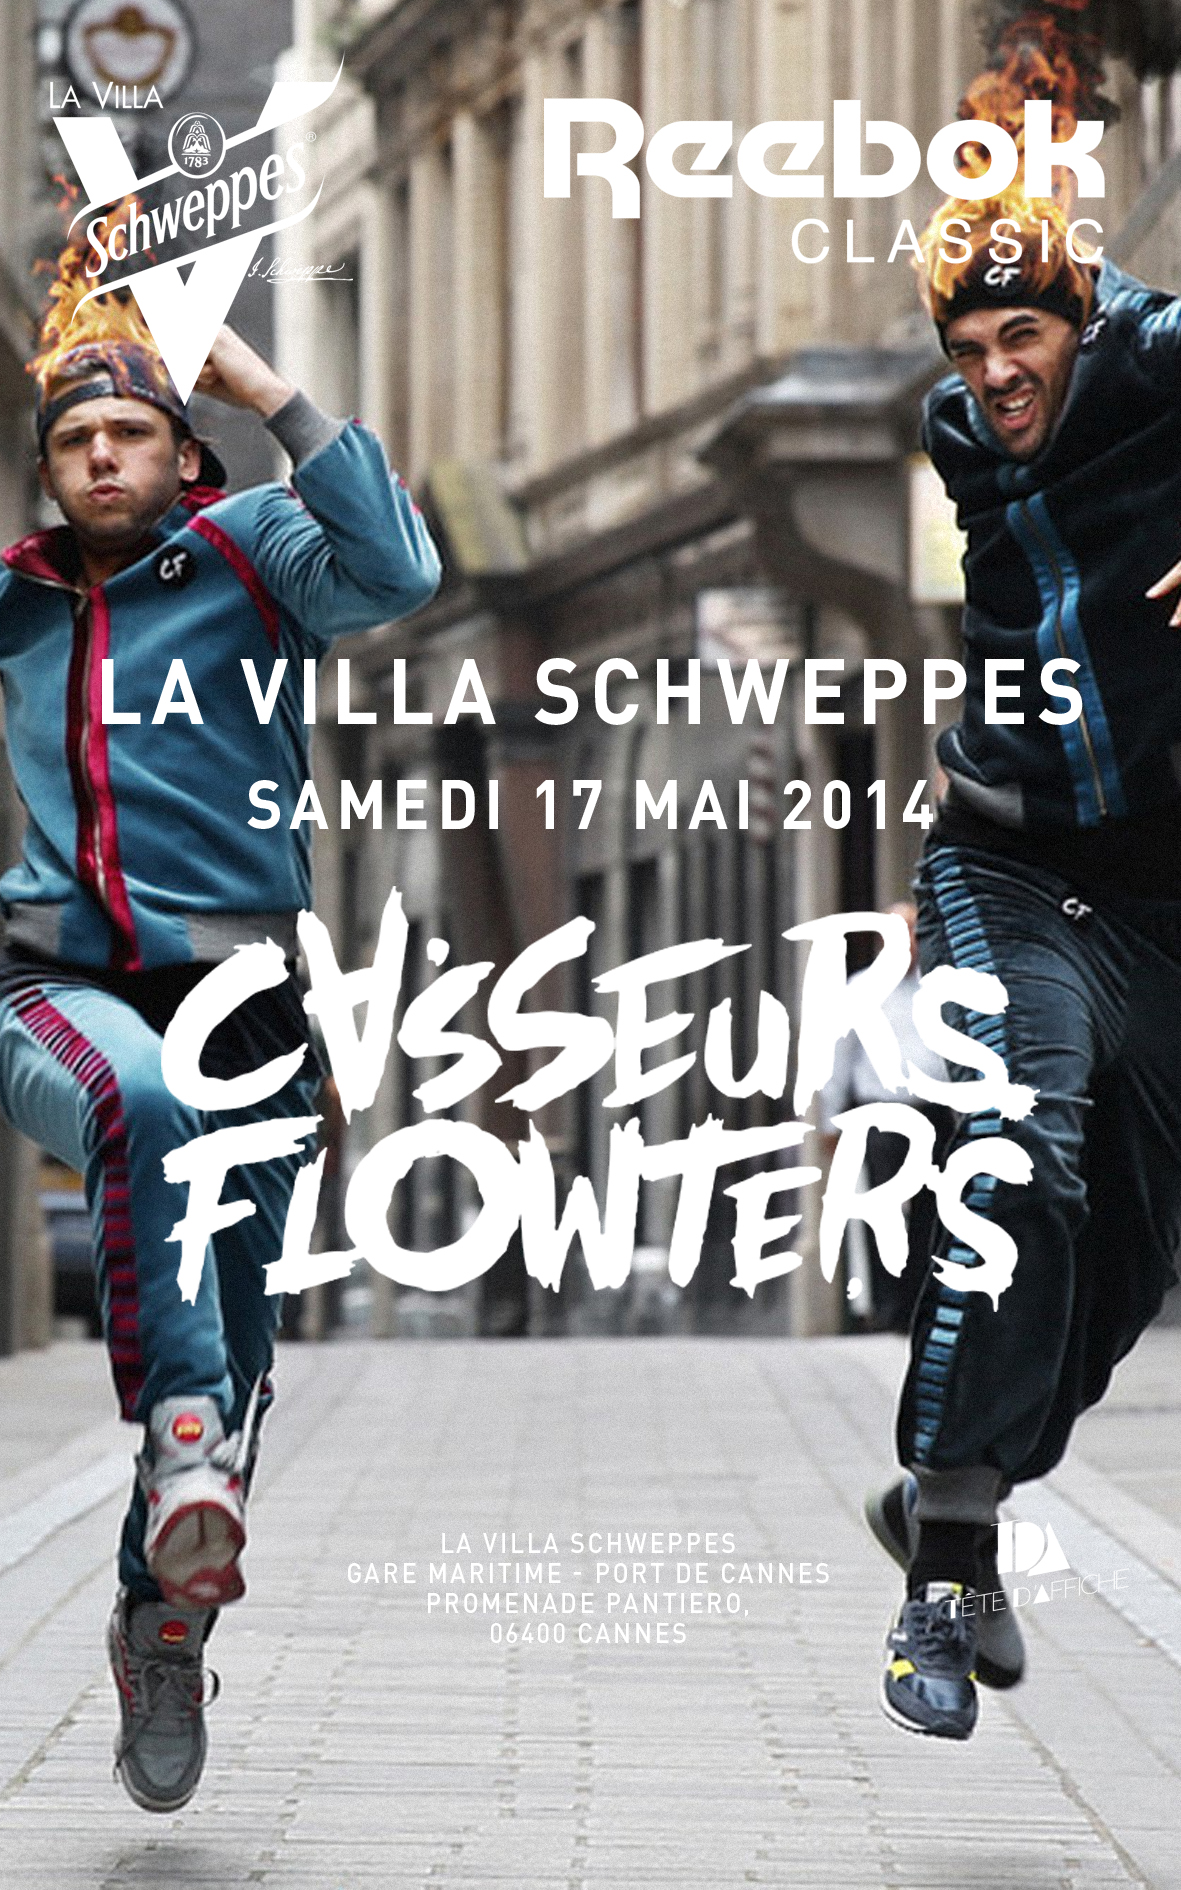 Les Casseurs Flowters seront à La Villa Schweppes à Cannes le samedi 17 mai